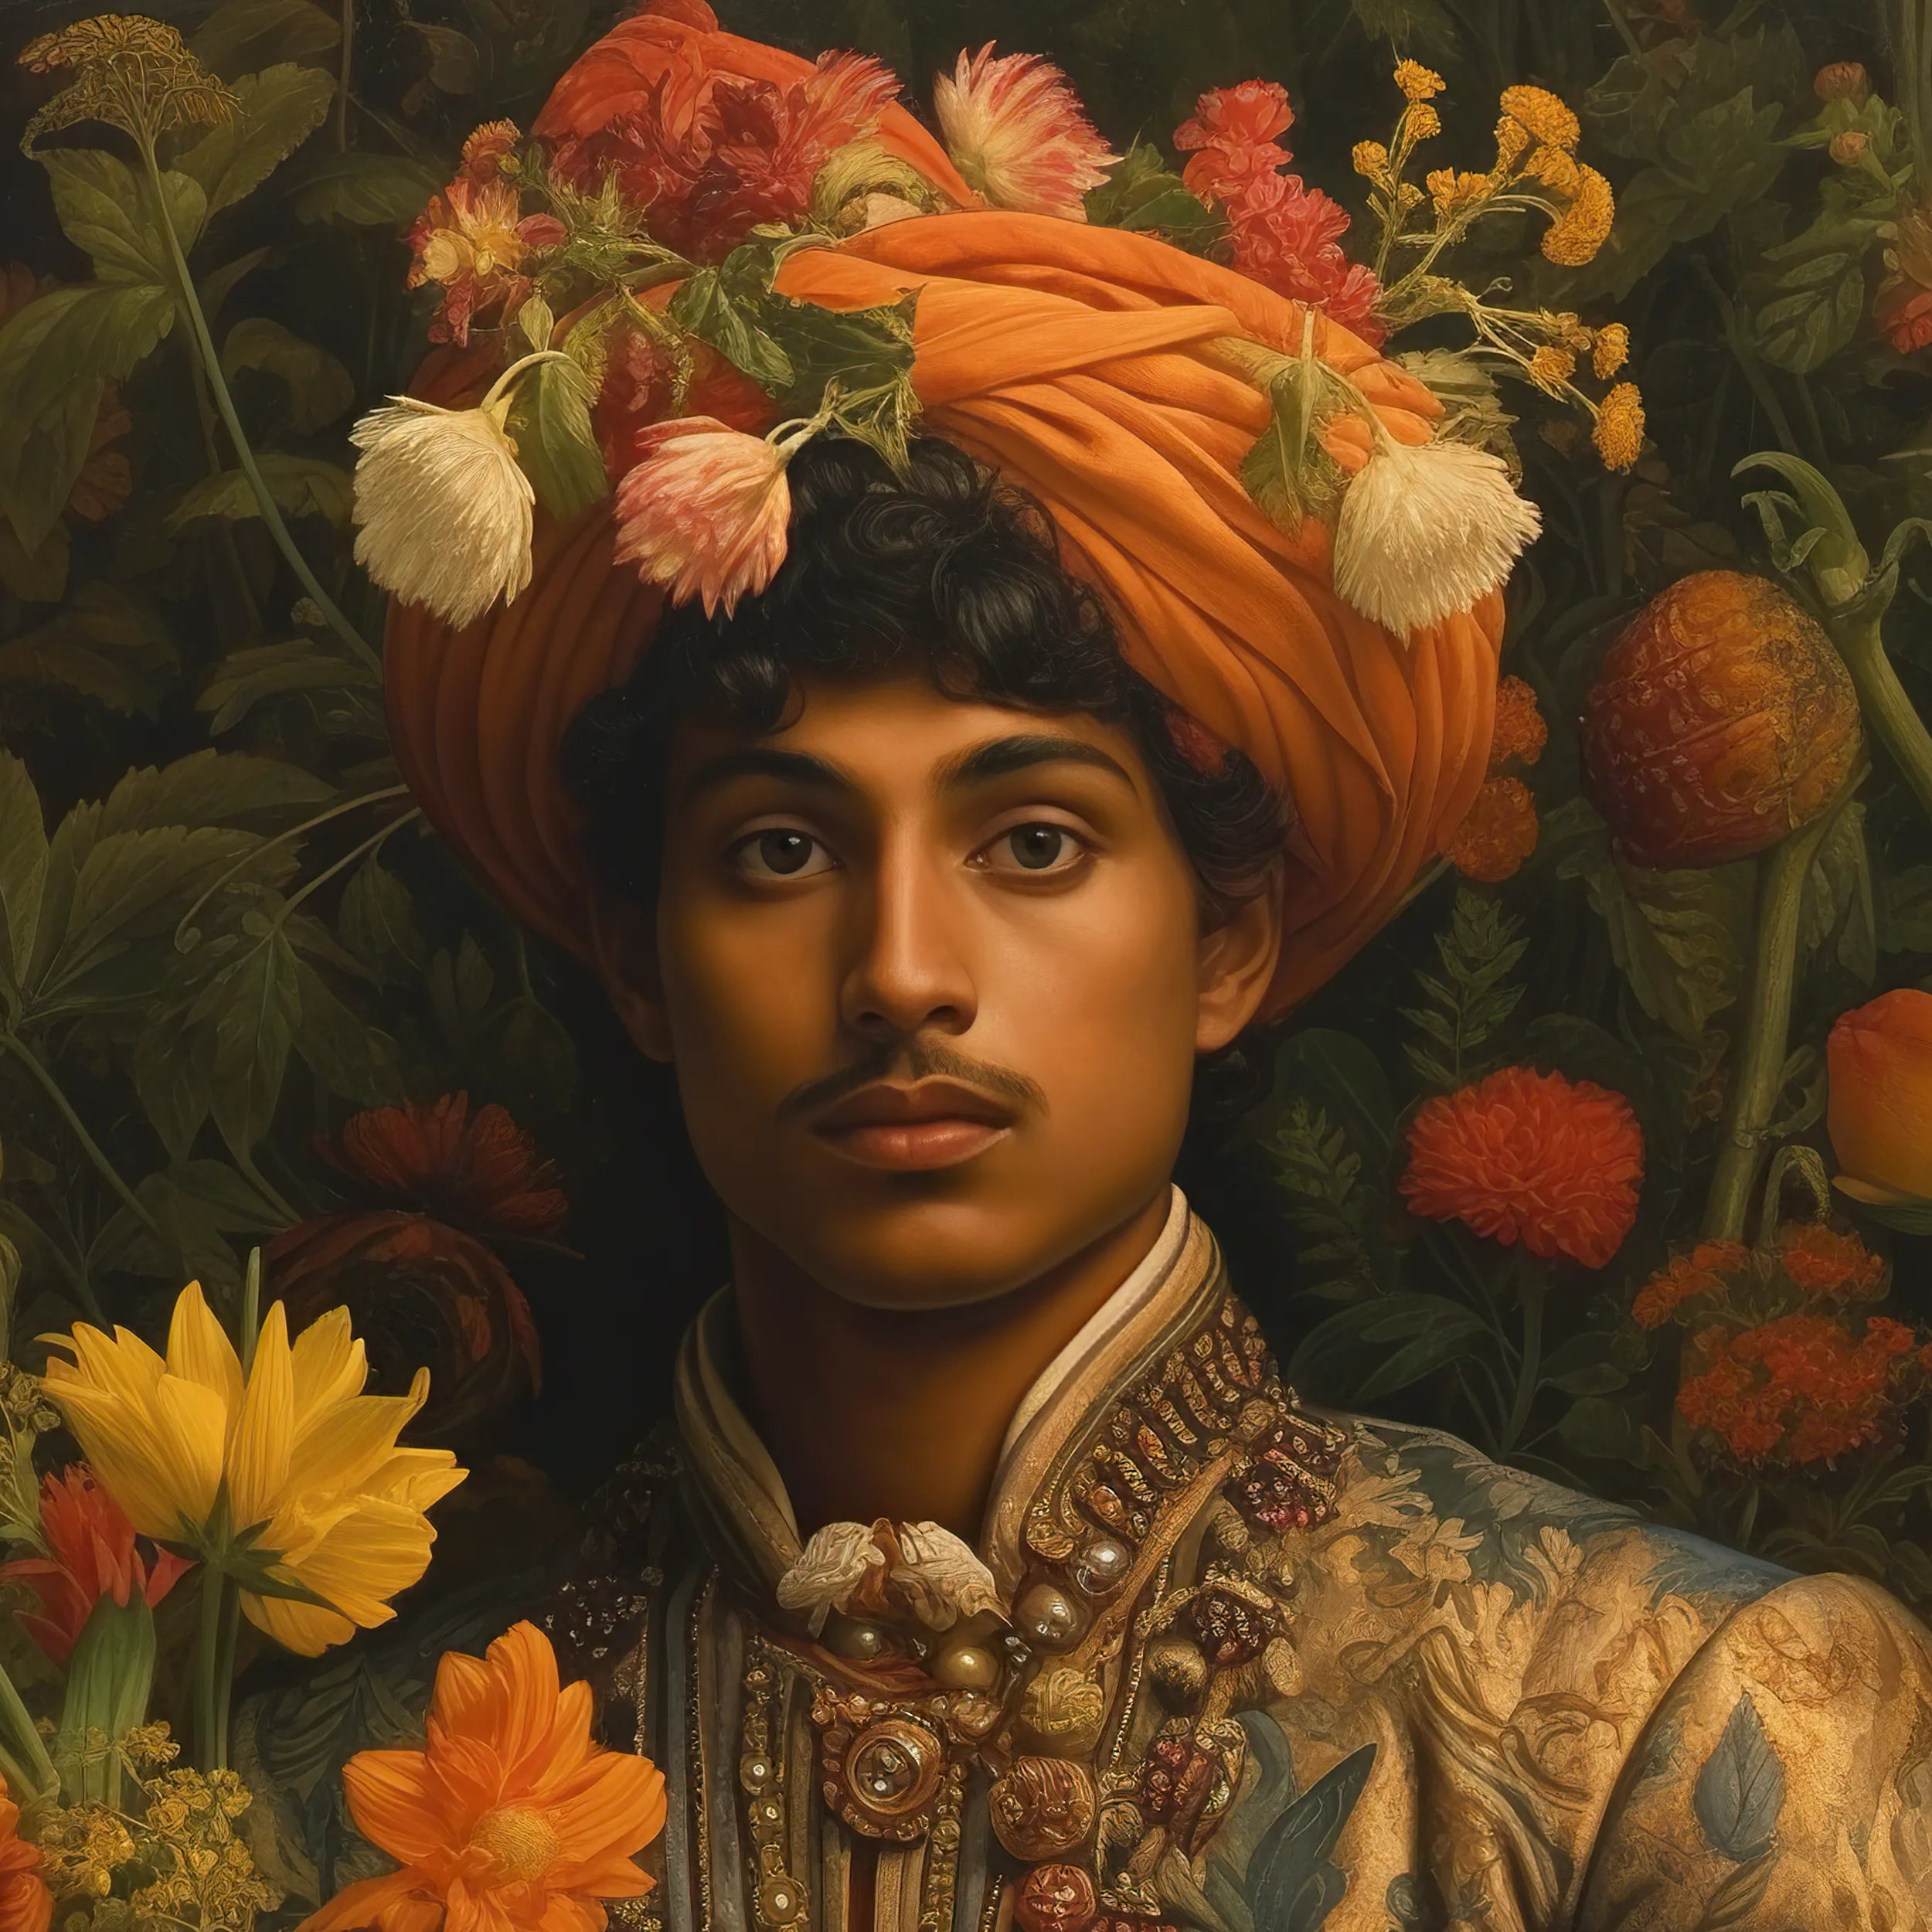 Prince Rajanikanta - Gay India Tamil Royalty Queerart Print - Posters Prints & Visual Artwork - Aesthetic Art